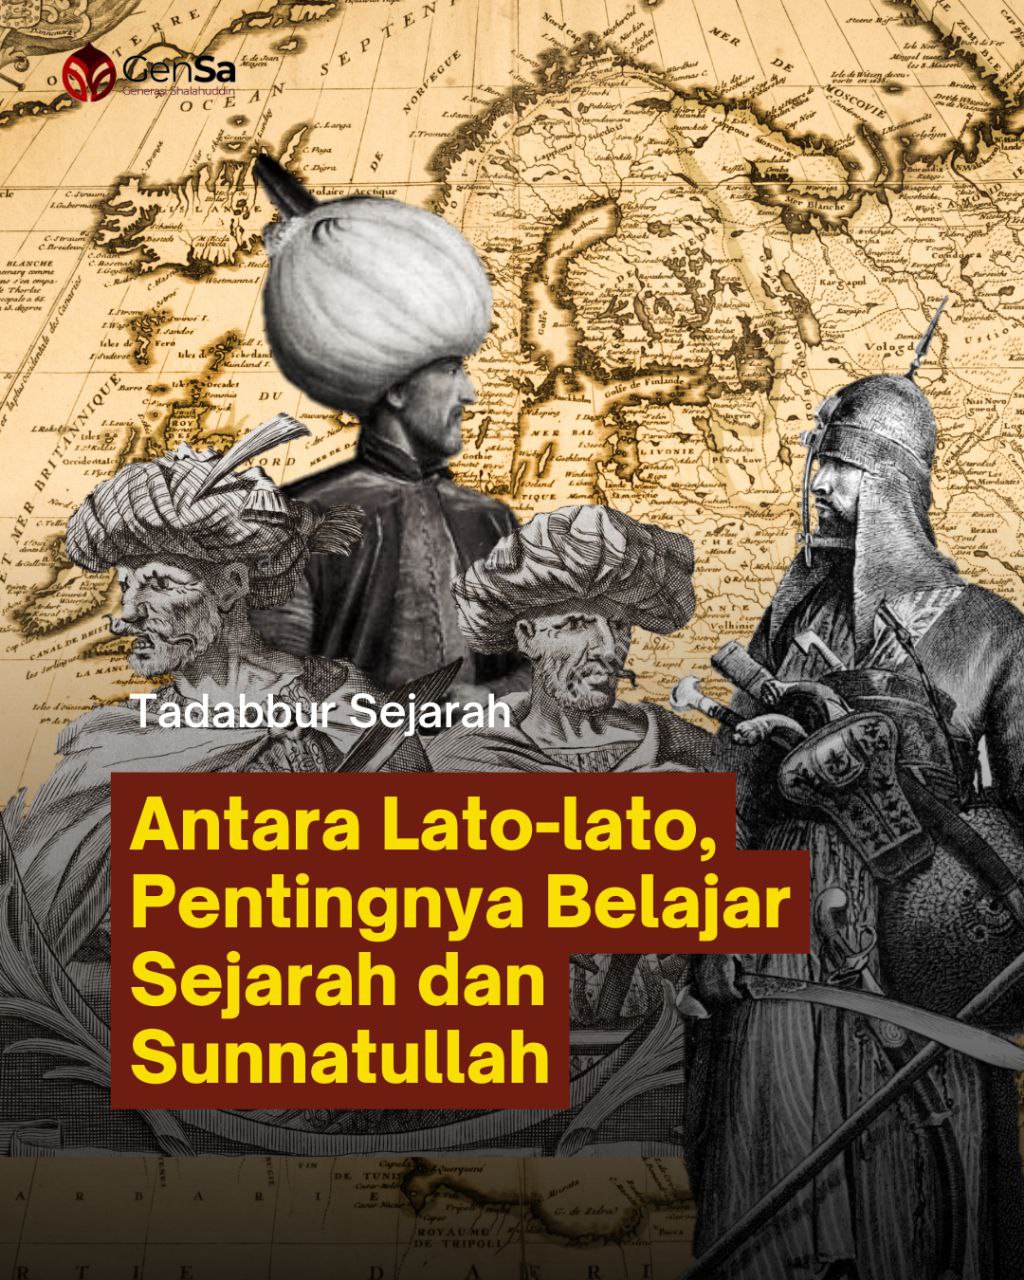 Antara Lato-lato, Pentingnya Belajar Sejarah dan Sunnatullah